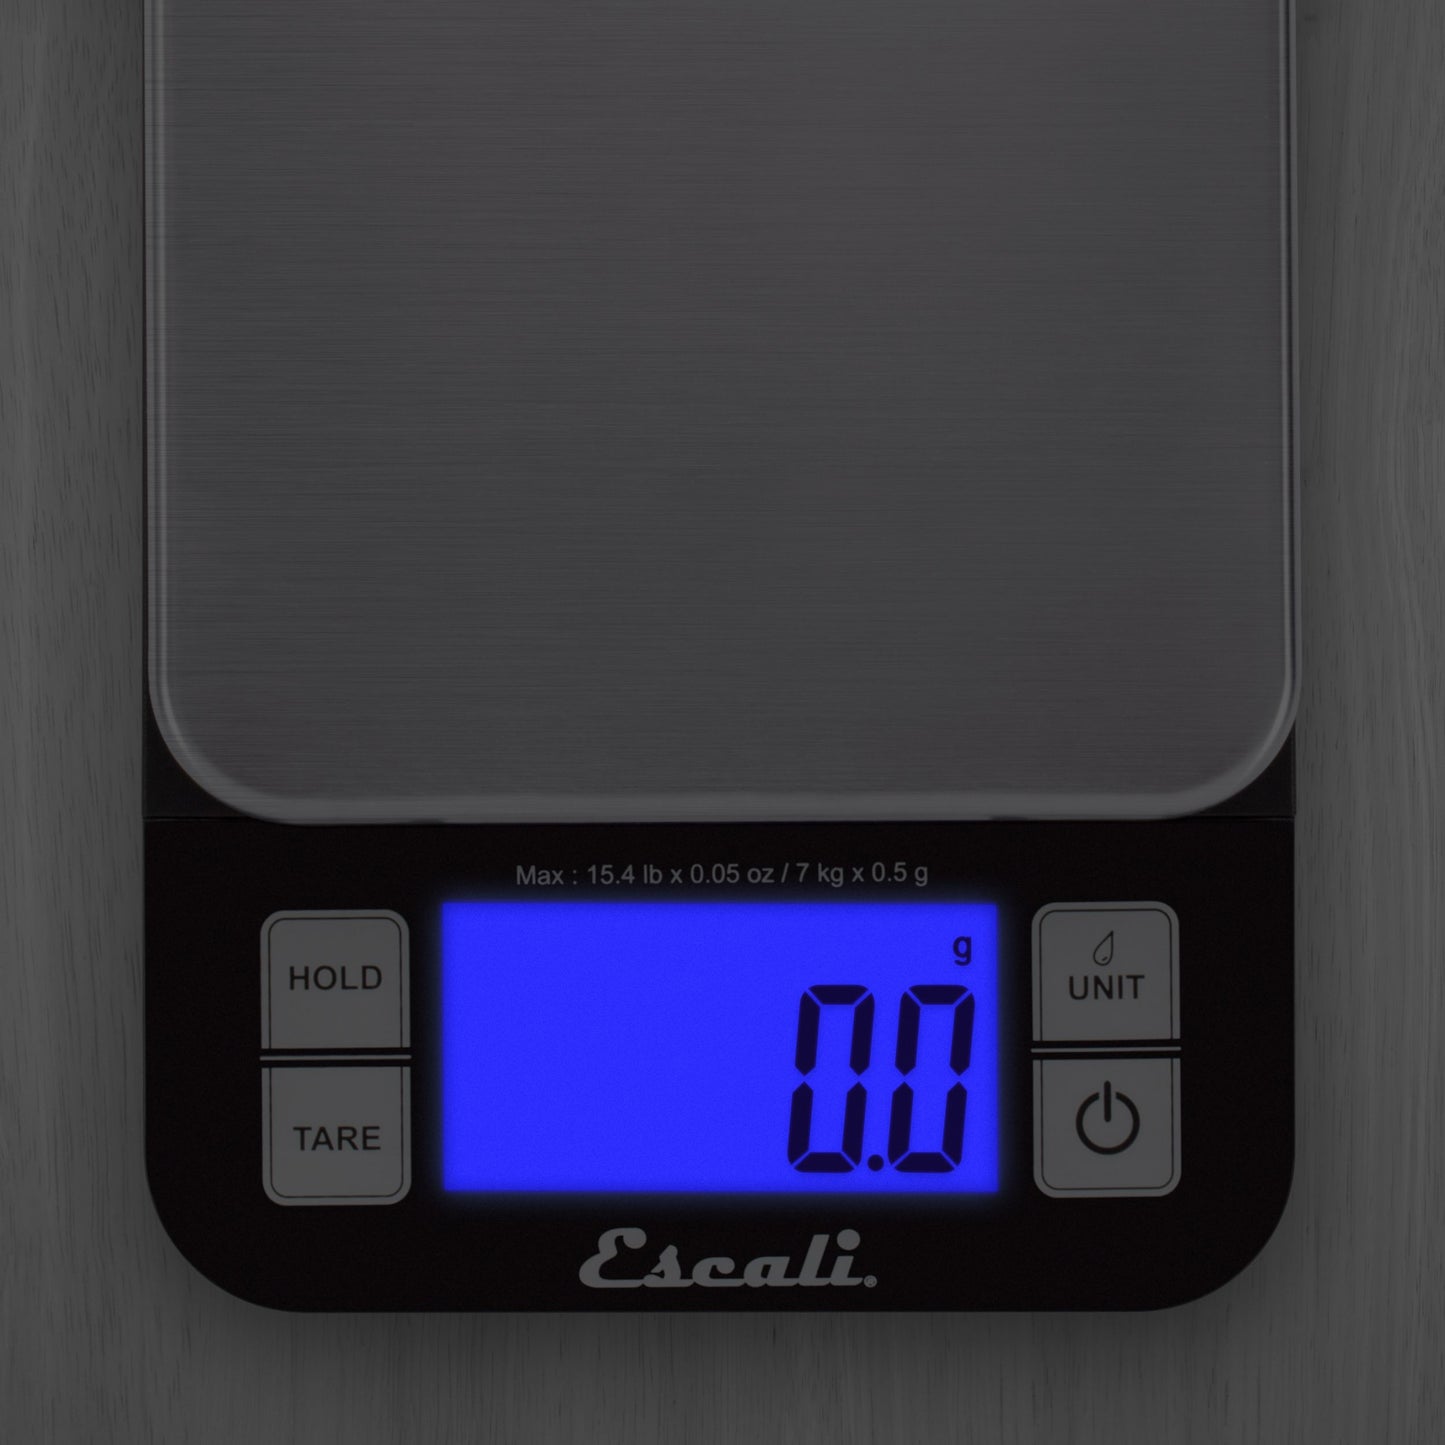 Escali Nutro:Digital Scale 15 lb - Keystone Homebrew Supply